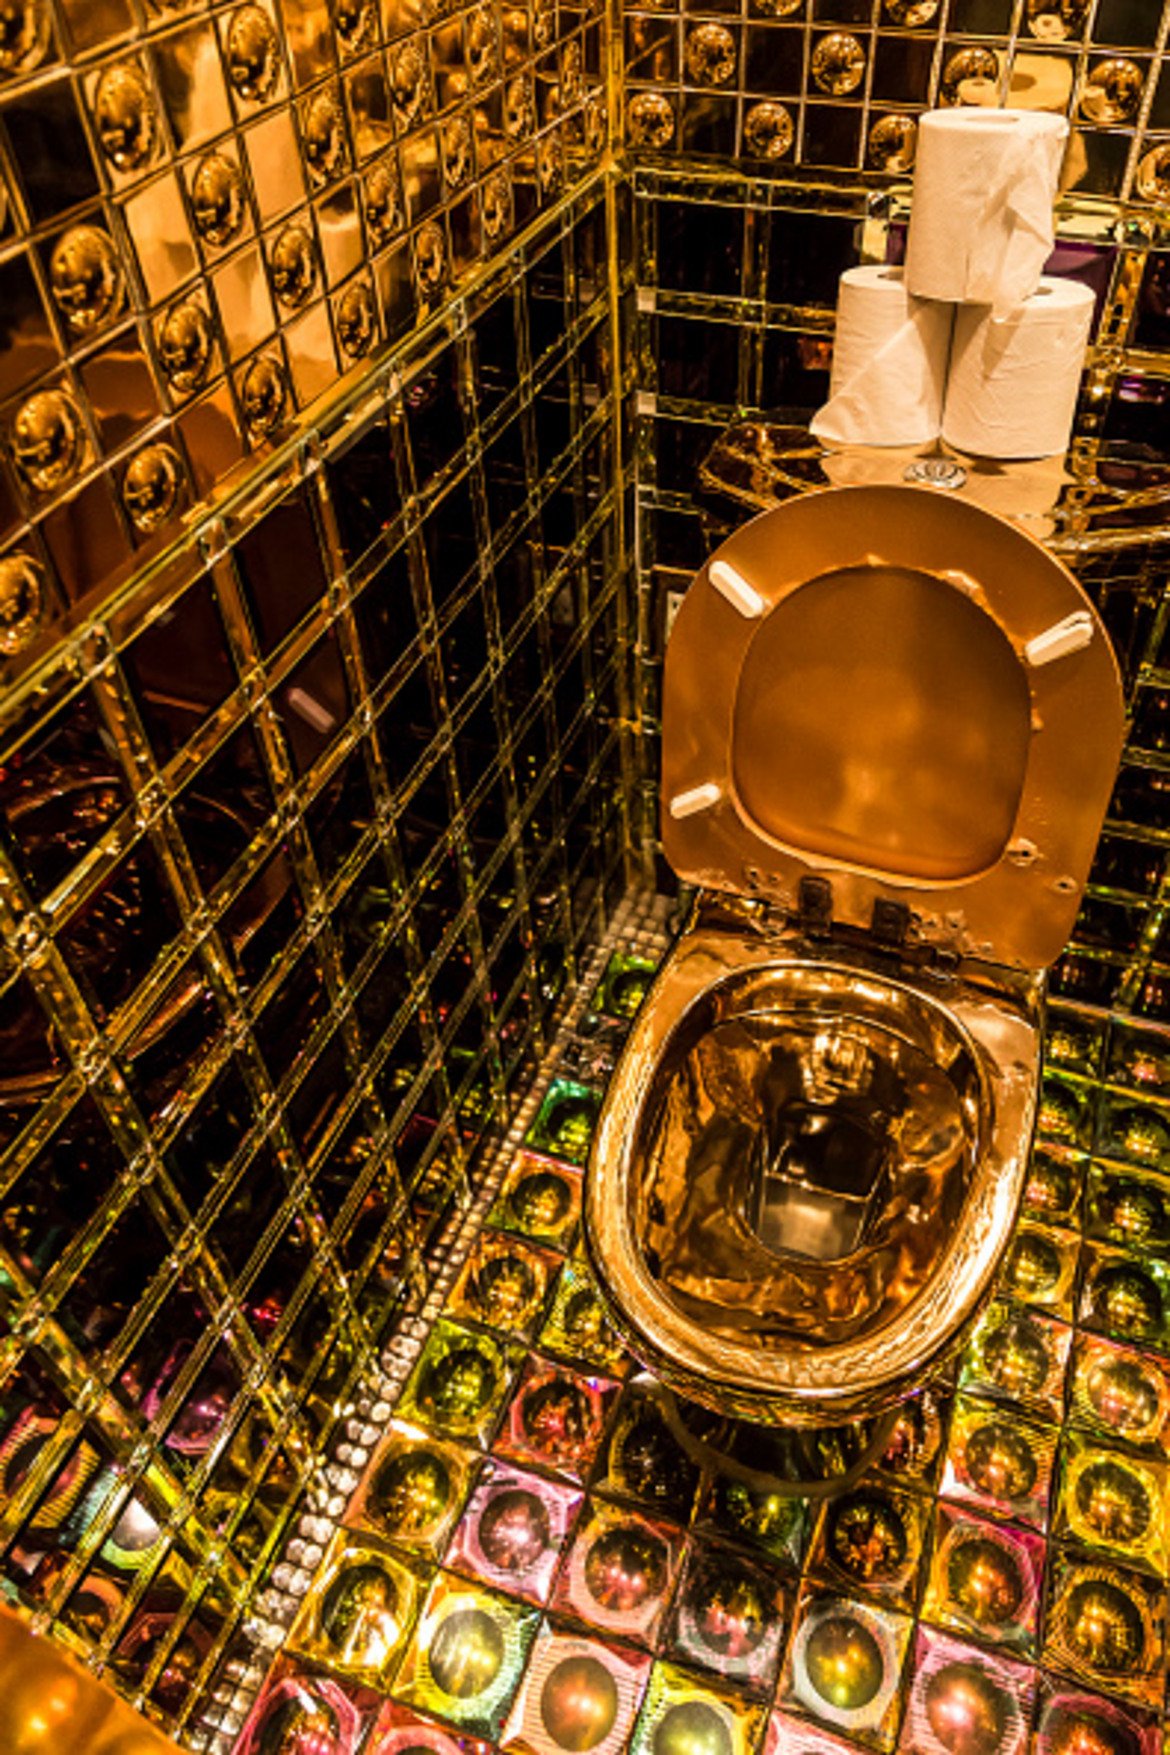 Тази тоалетна е златна (буквално) и се намира в ресторант Robots в Токио. Златната тоалетна чиния е допълнена от неонови светлини от пода, огледални стени и екрани в общата част на помещението.